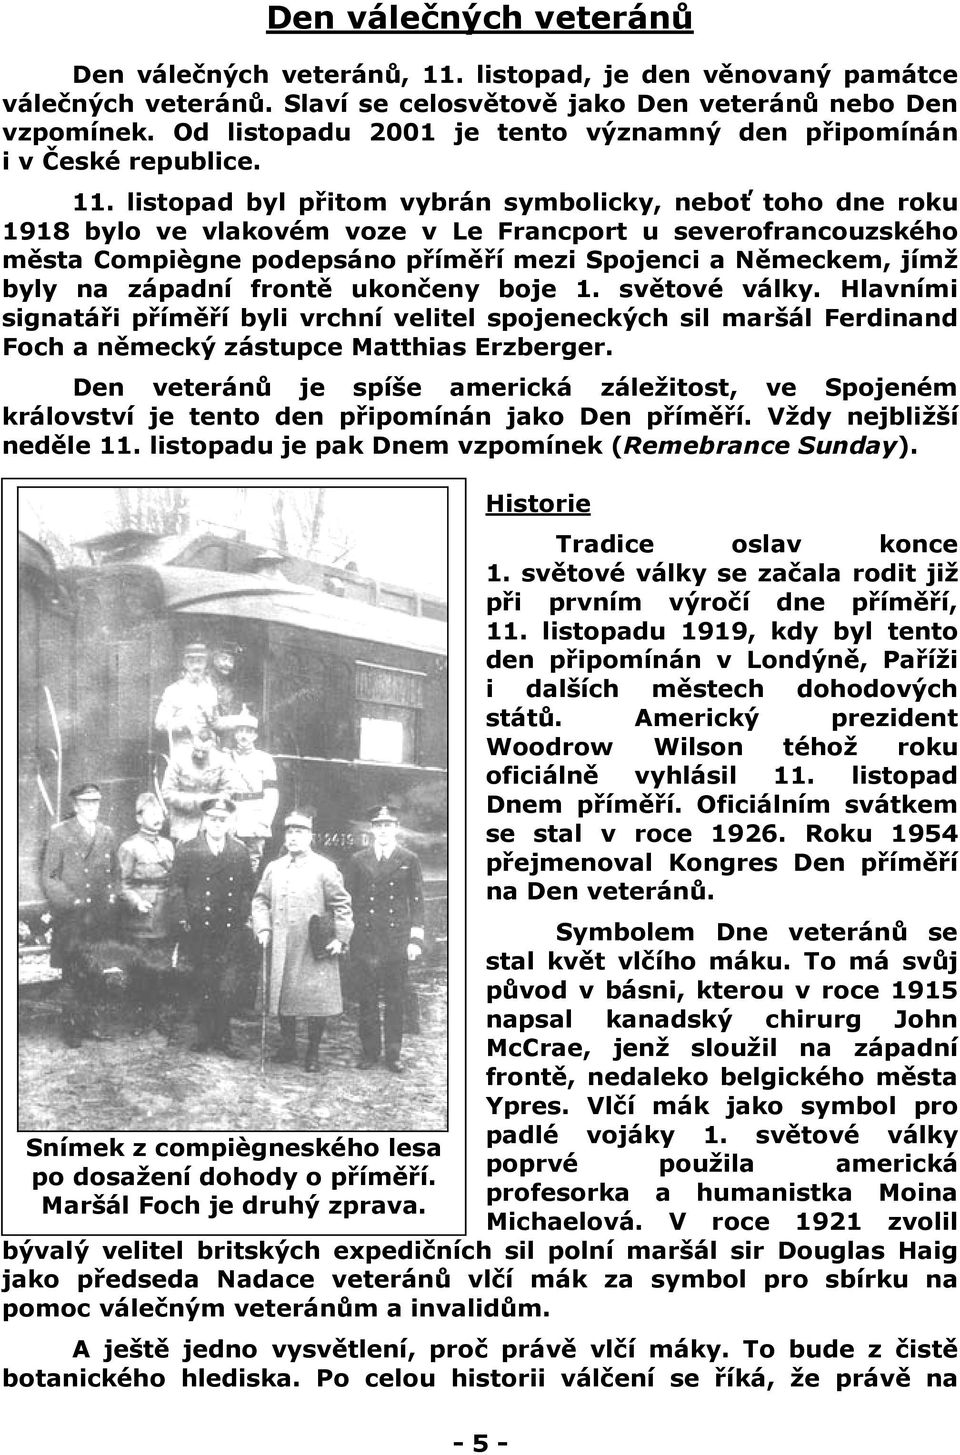 listopad byl přitom vybrán symbolicky, neboť toho dne roku 1918 bylo ve vlakovém voze v Le Francport u severofrancouzského města Compiègne podepsáno příměří mezi Spojenci a Německem, jímž byly na